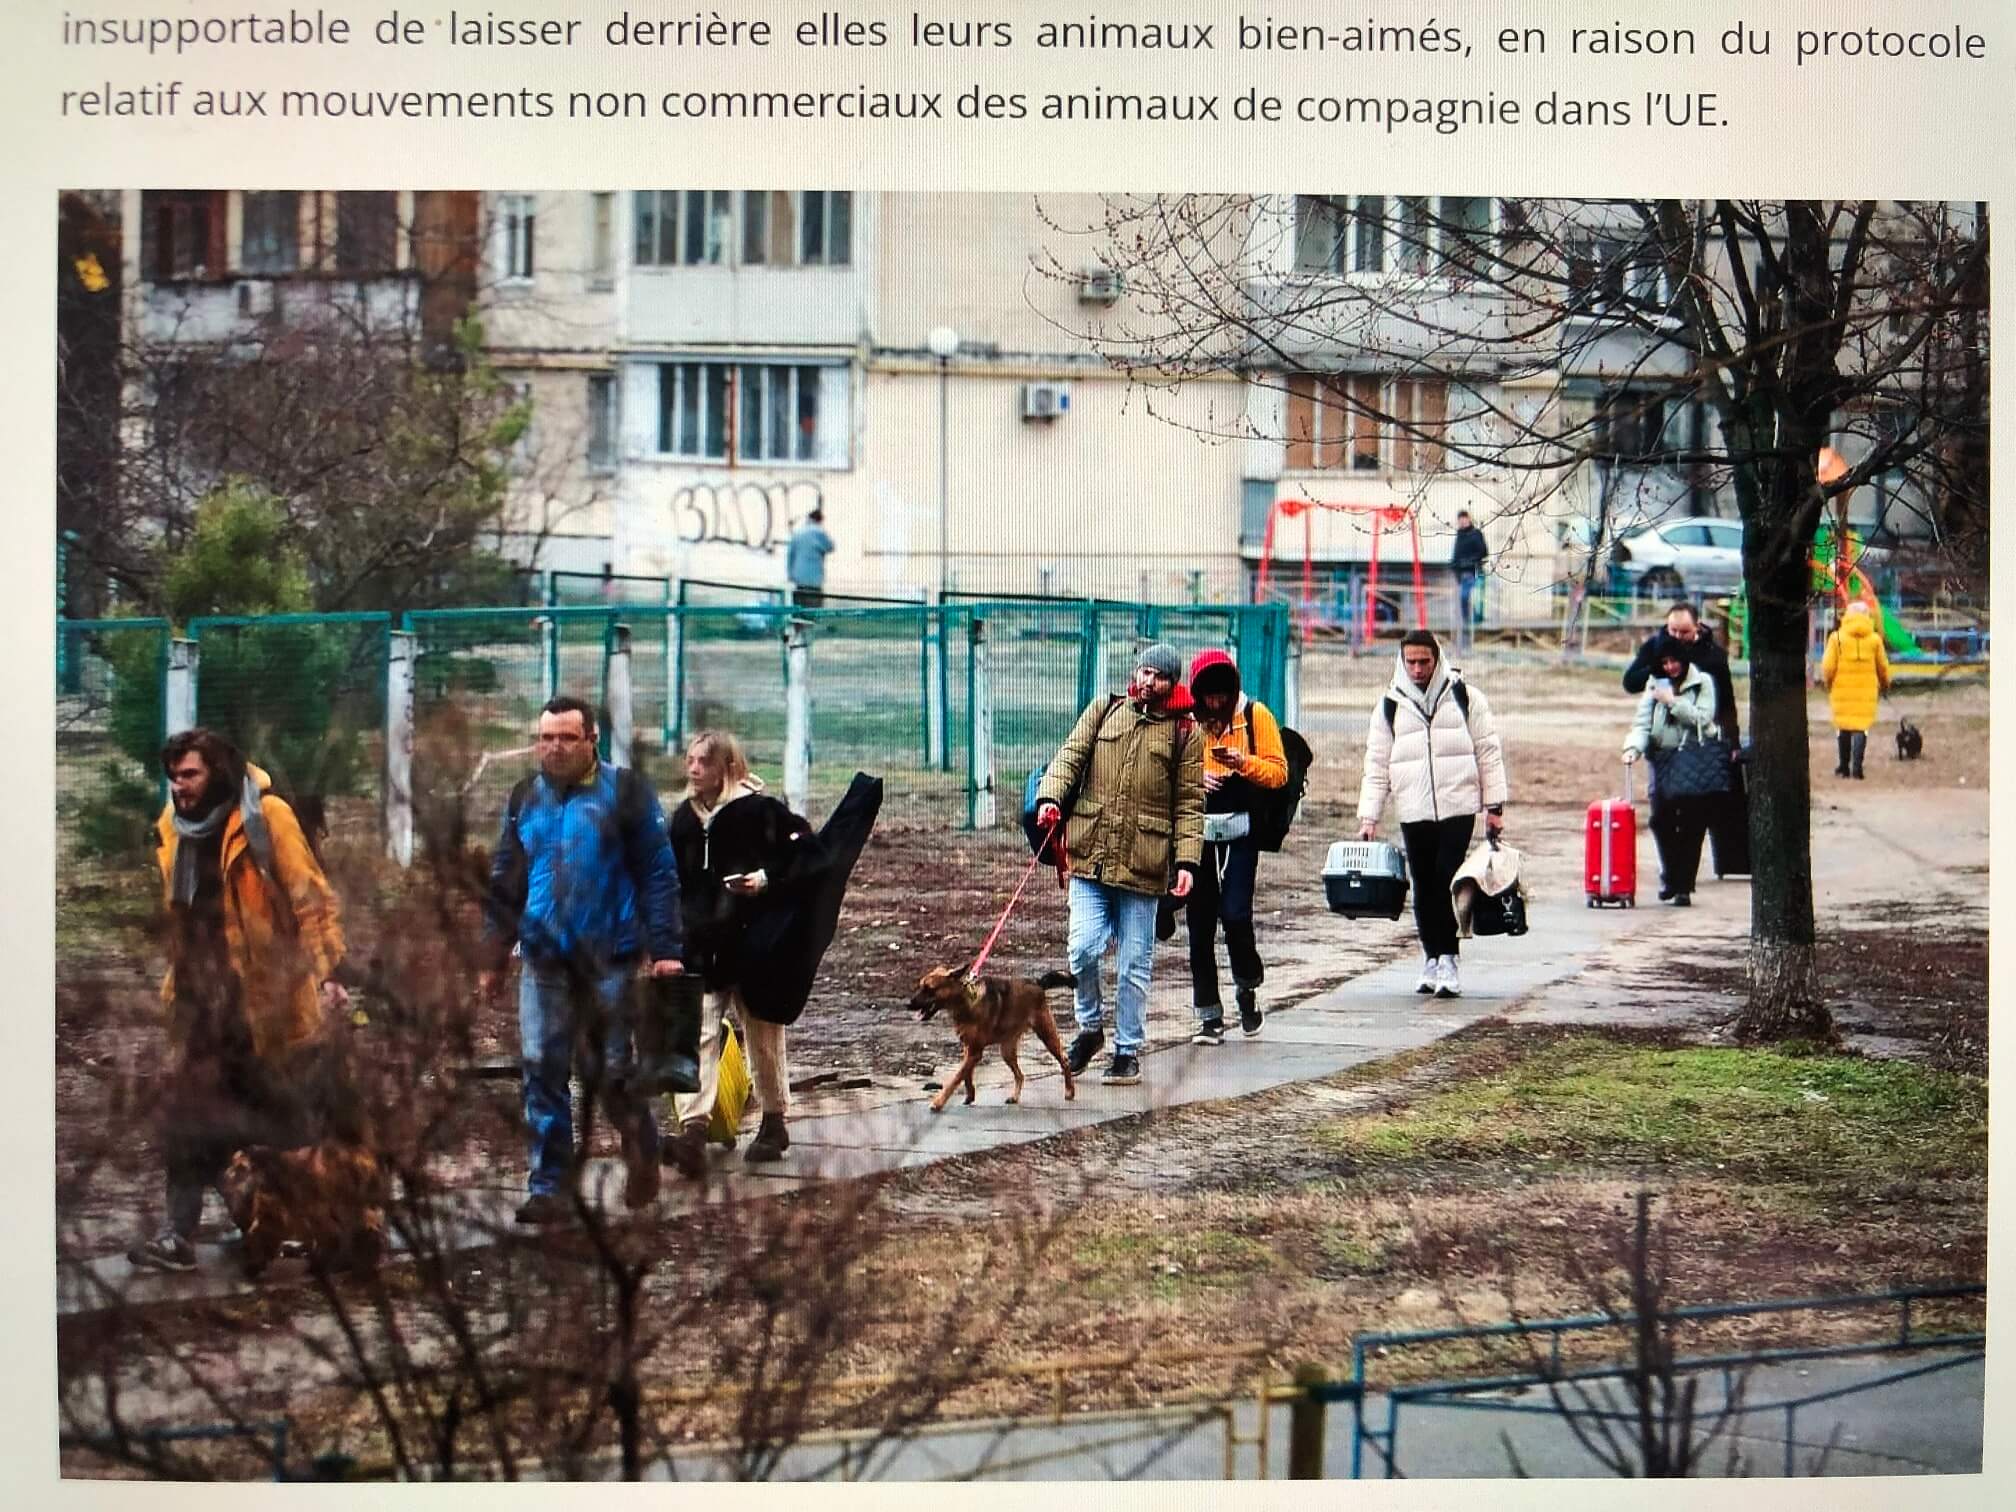 欧州最新情報「戦時下のペットたち。ウクライナにおける動物たちの今」